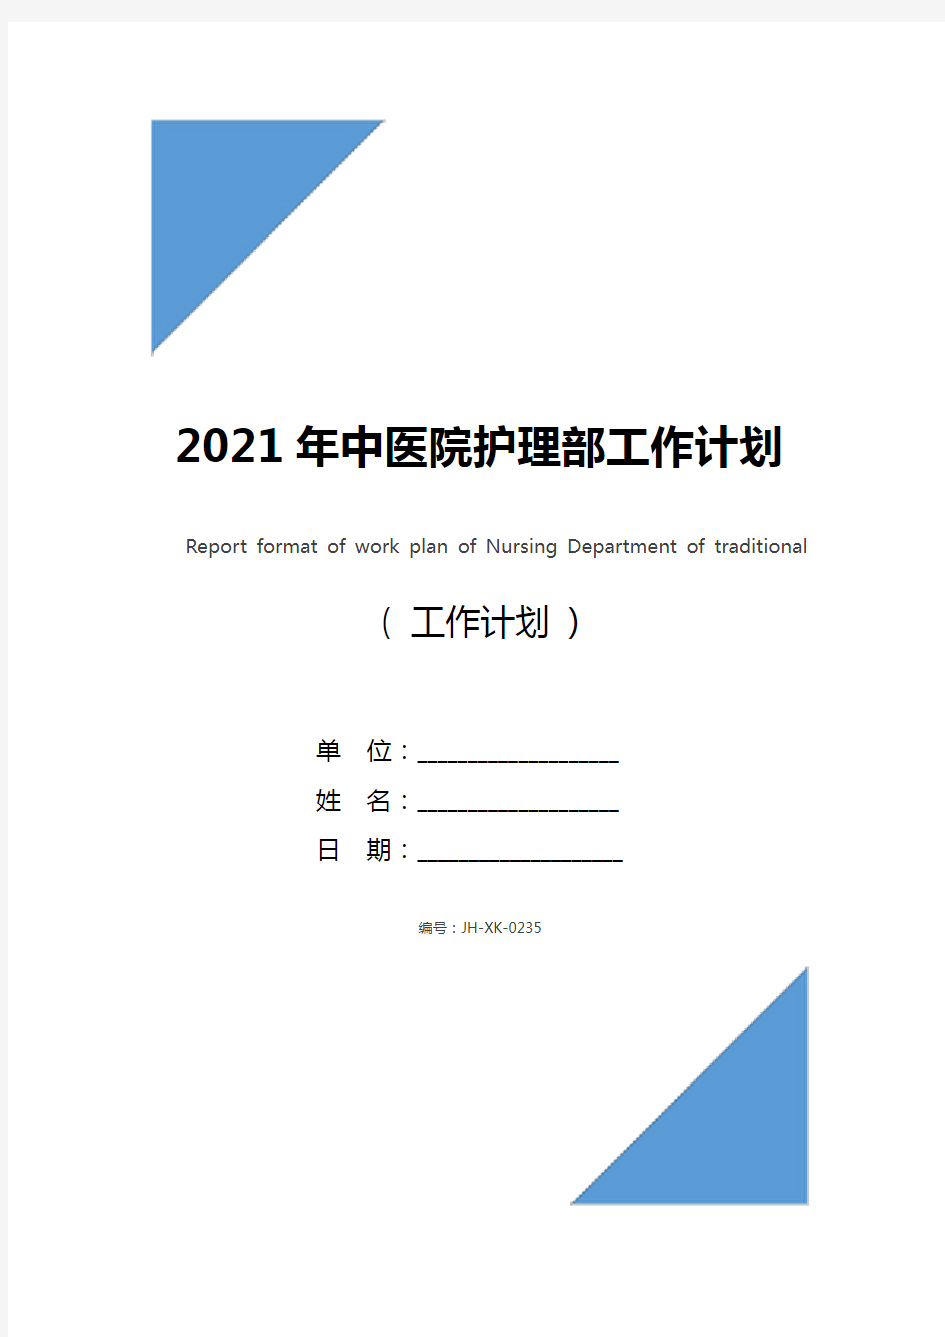 2021年中医院护理部工作计划报告格式(新版)